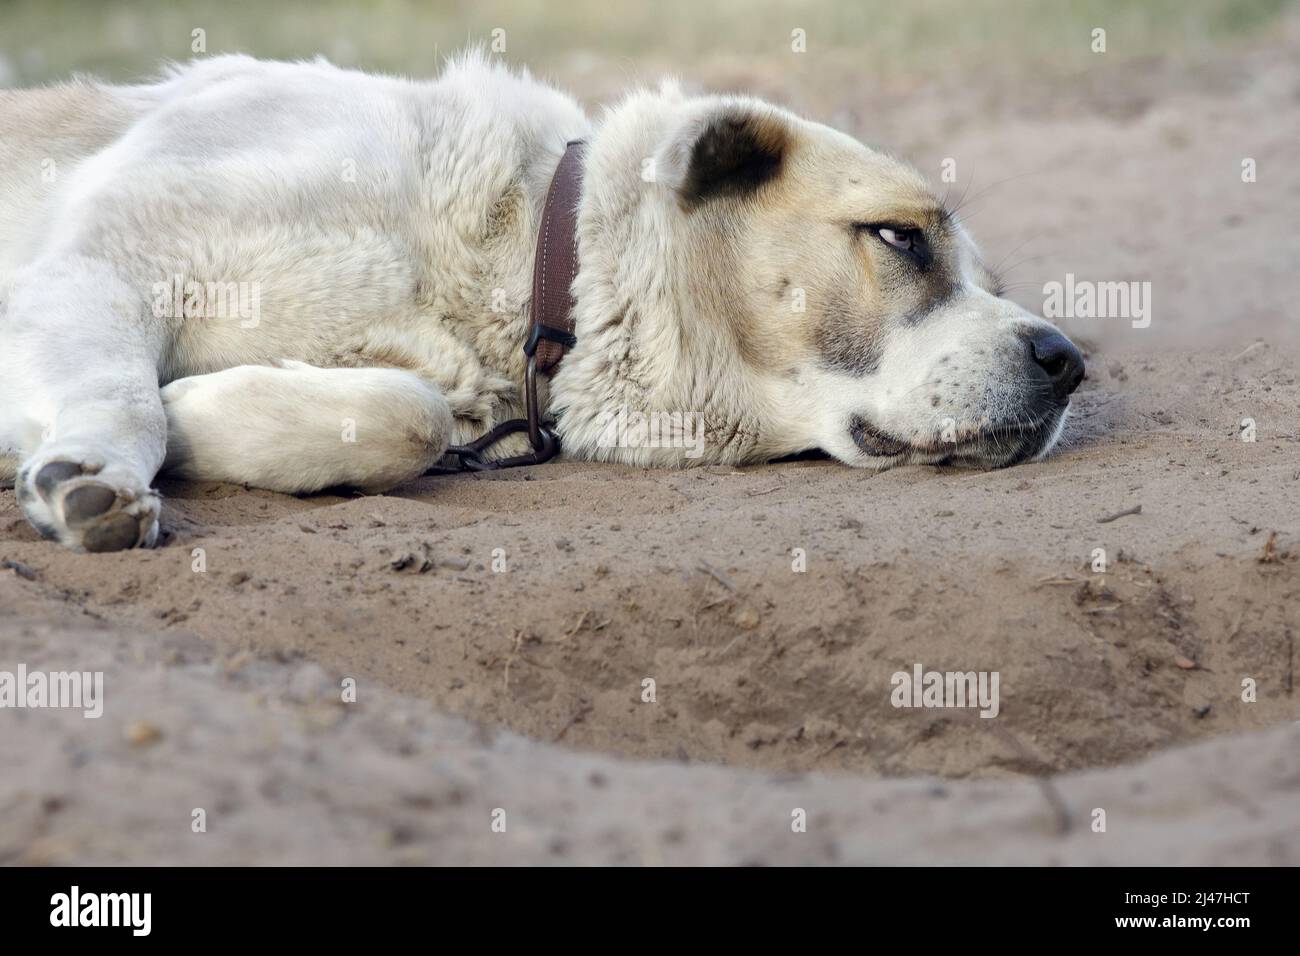 Large dog on bed immagini e fotografie stock ad alta risoluzione - Alamy